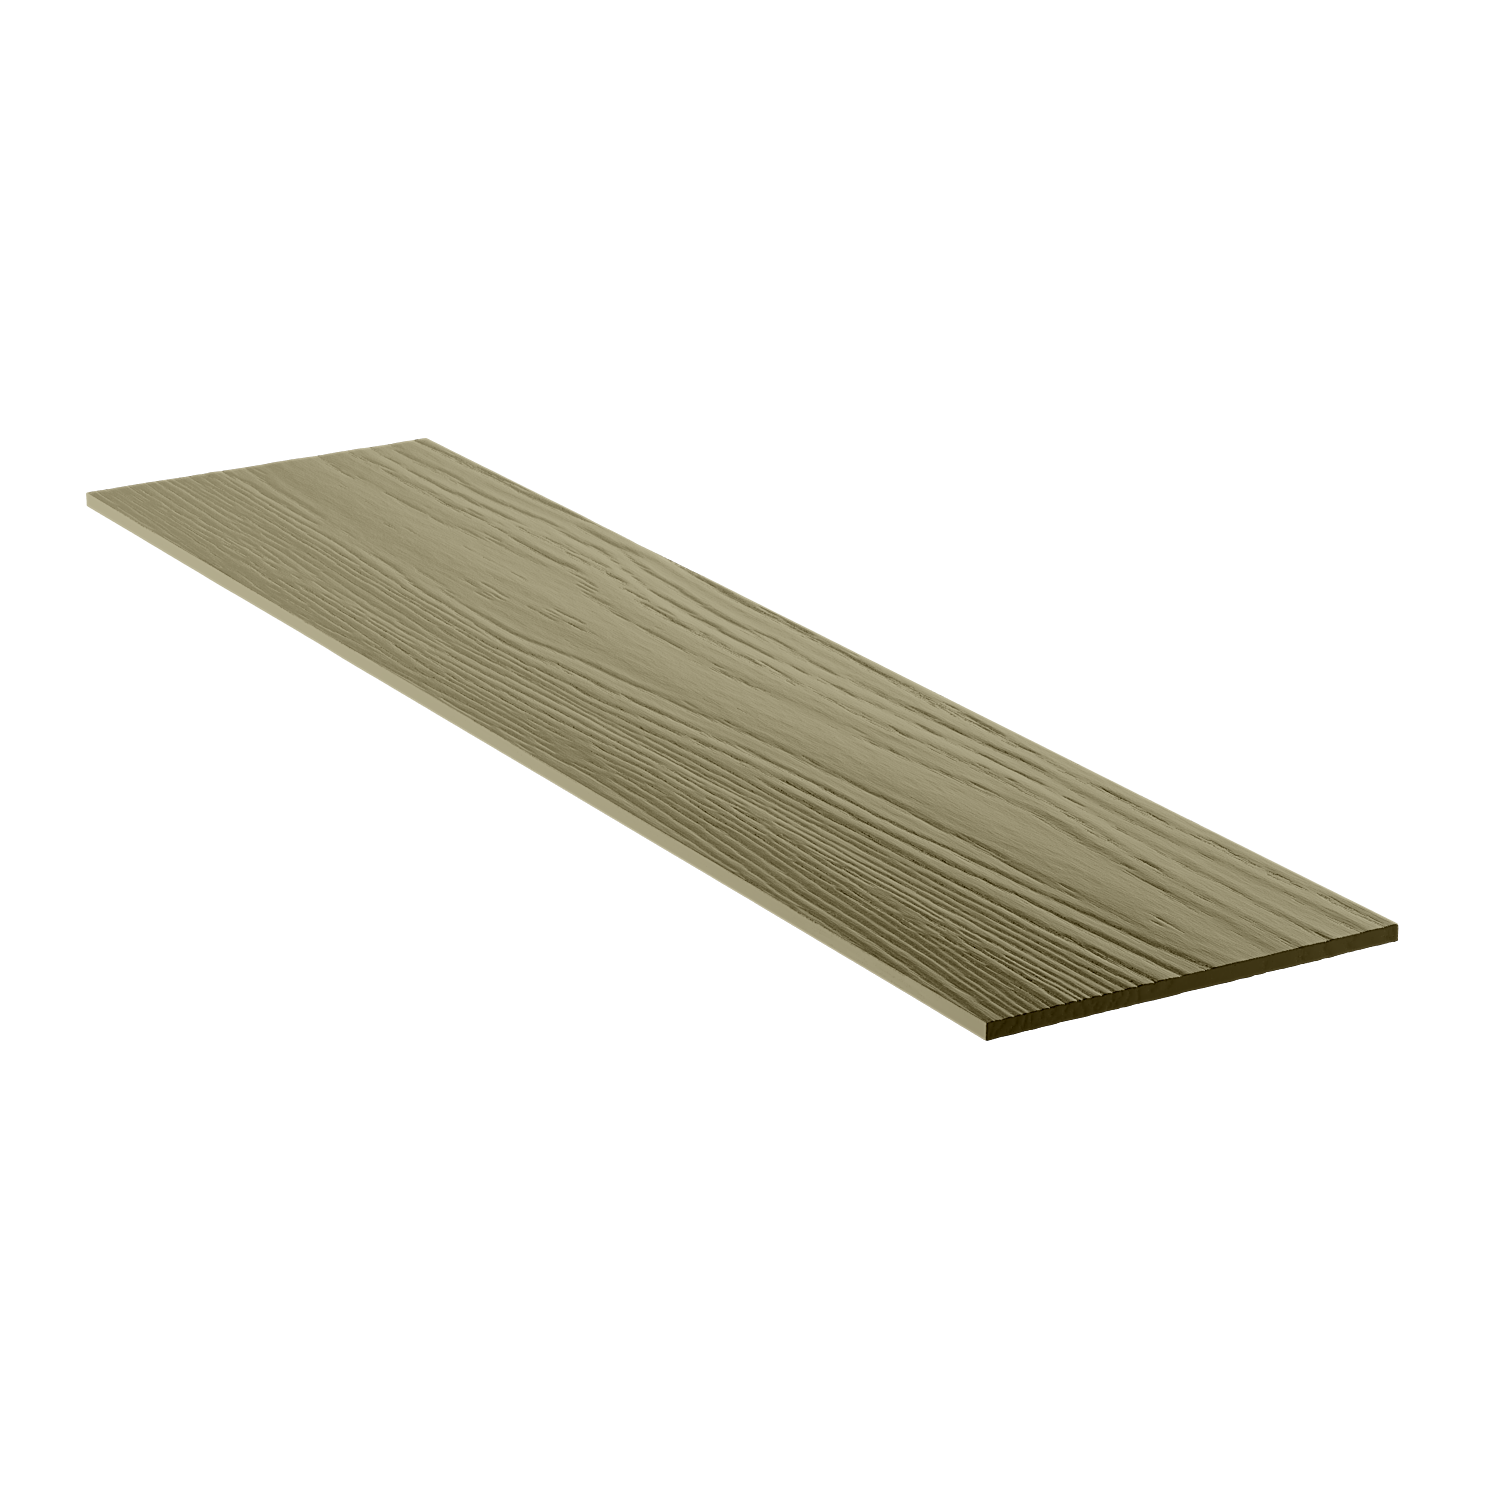 Фиброцементный сайдинг Фибростар wood КС 36- Оливковый серый RAL 7002 (аналог Кедрала С 58)